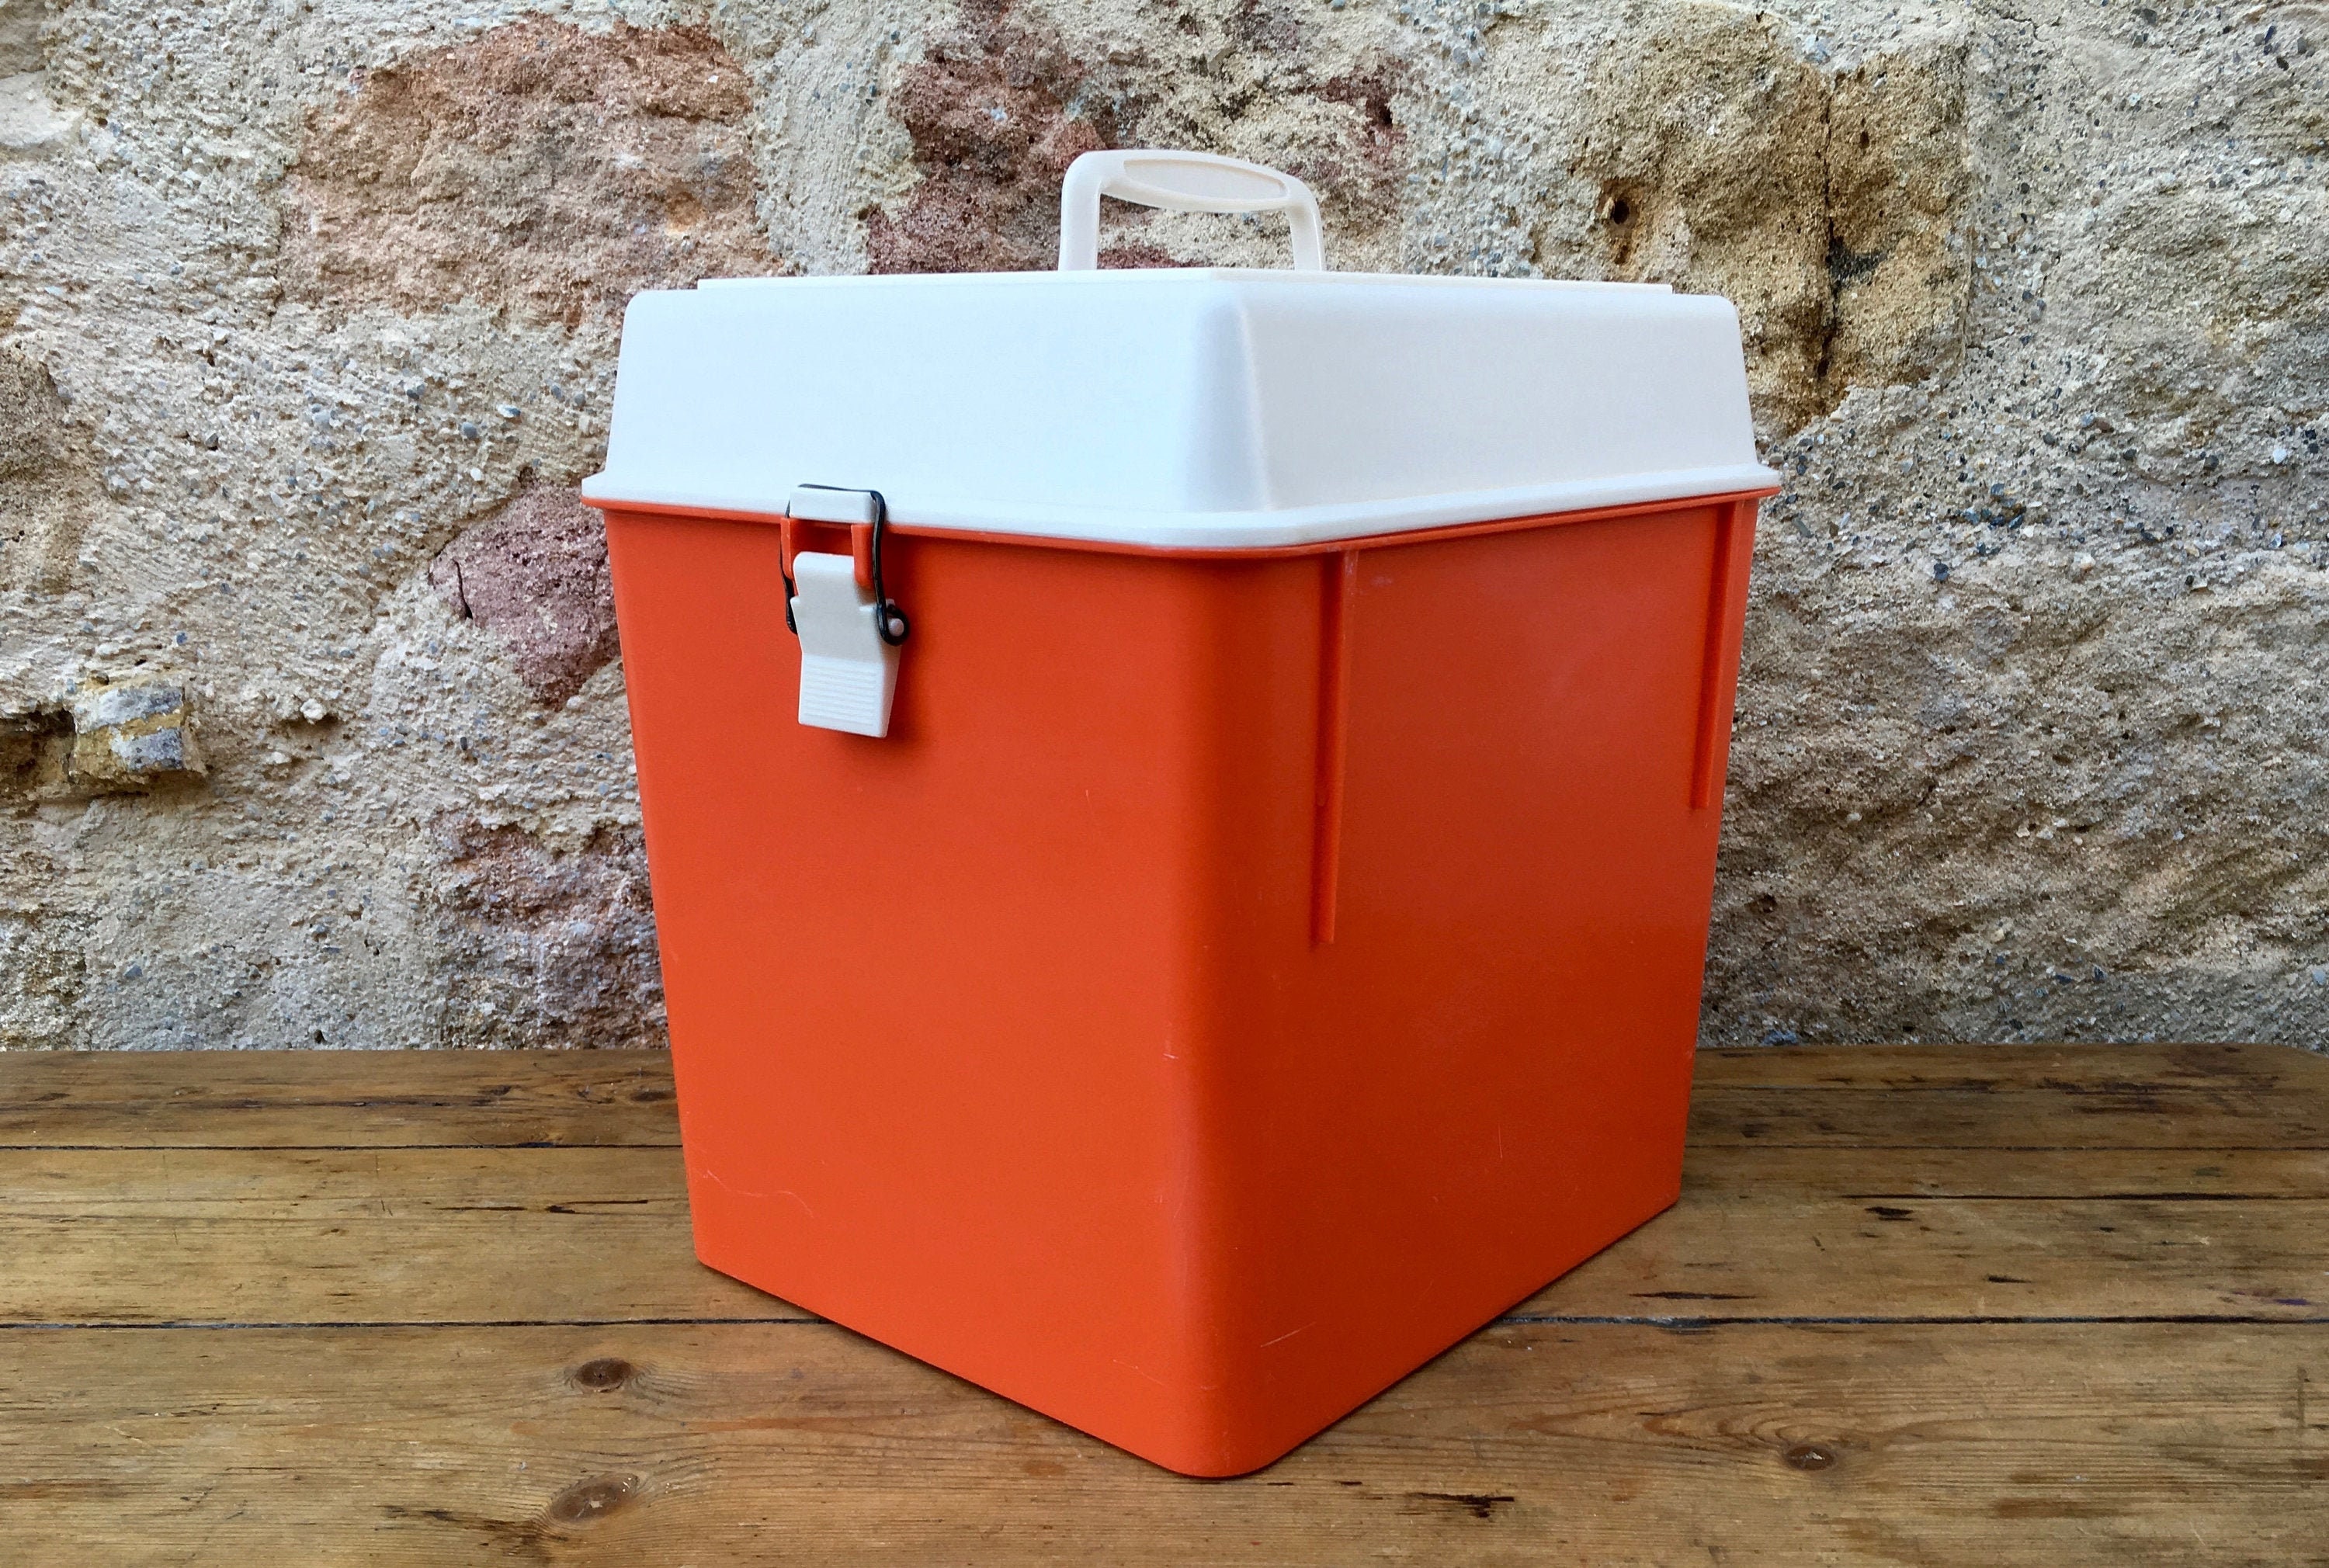 Glacière Boite Pique-Nique Plastique Orange Comète French Vintage Plastic Cooler